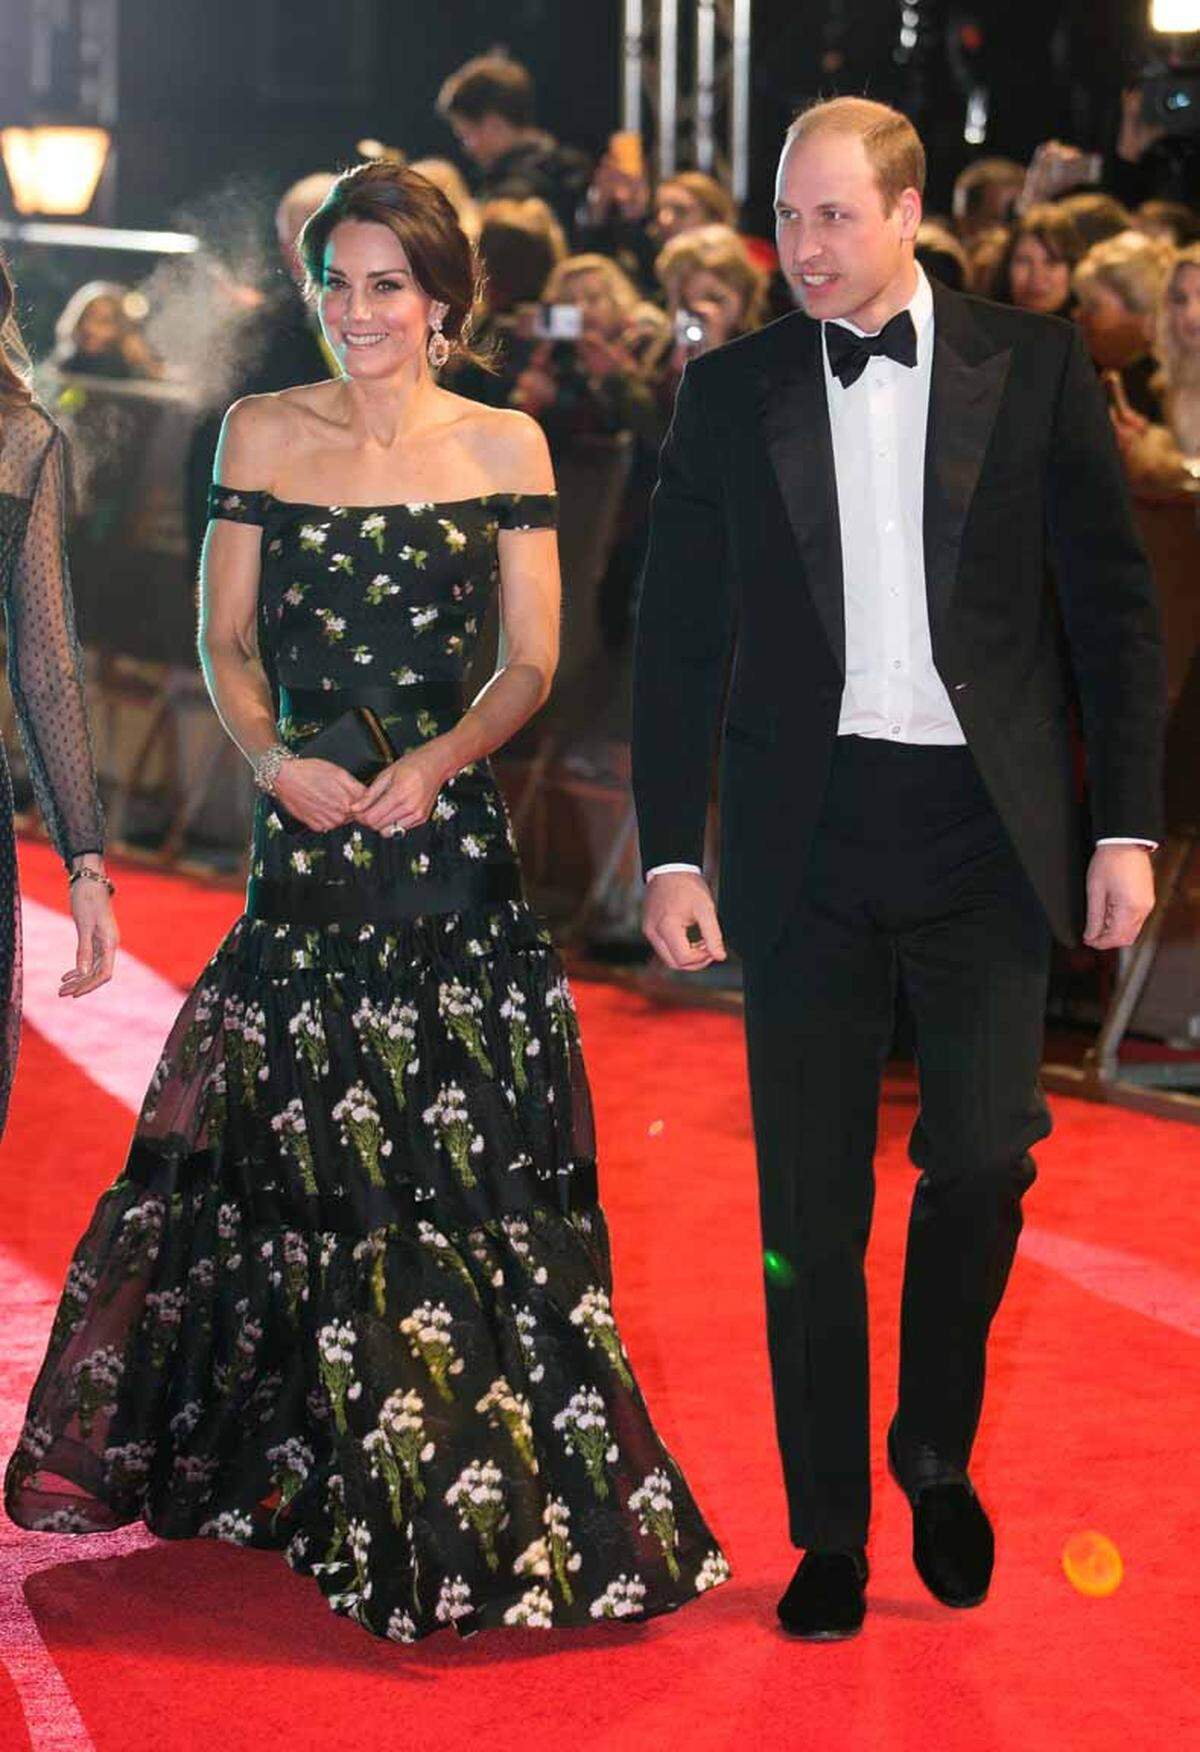 Royalen Aufputz erhielten die British Academy of Film and Television Awards (Bafta) in der Londoner Royal Albert Hall. Prinz William, der seit 2010 Präsident der Academy ist, erschien zum 70. Jubiläum der Preisverleihung an der Seite von Herzogin Catherine, die in einem Kleid von Alexander McQueen mit den Stars mithalten konnte.